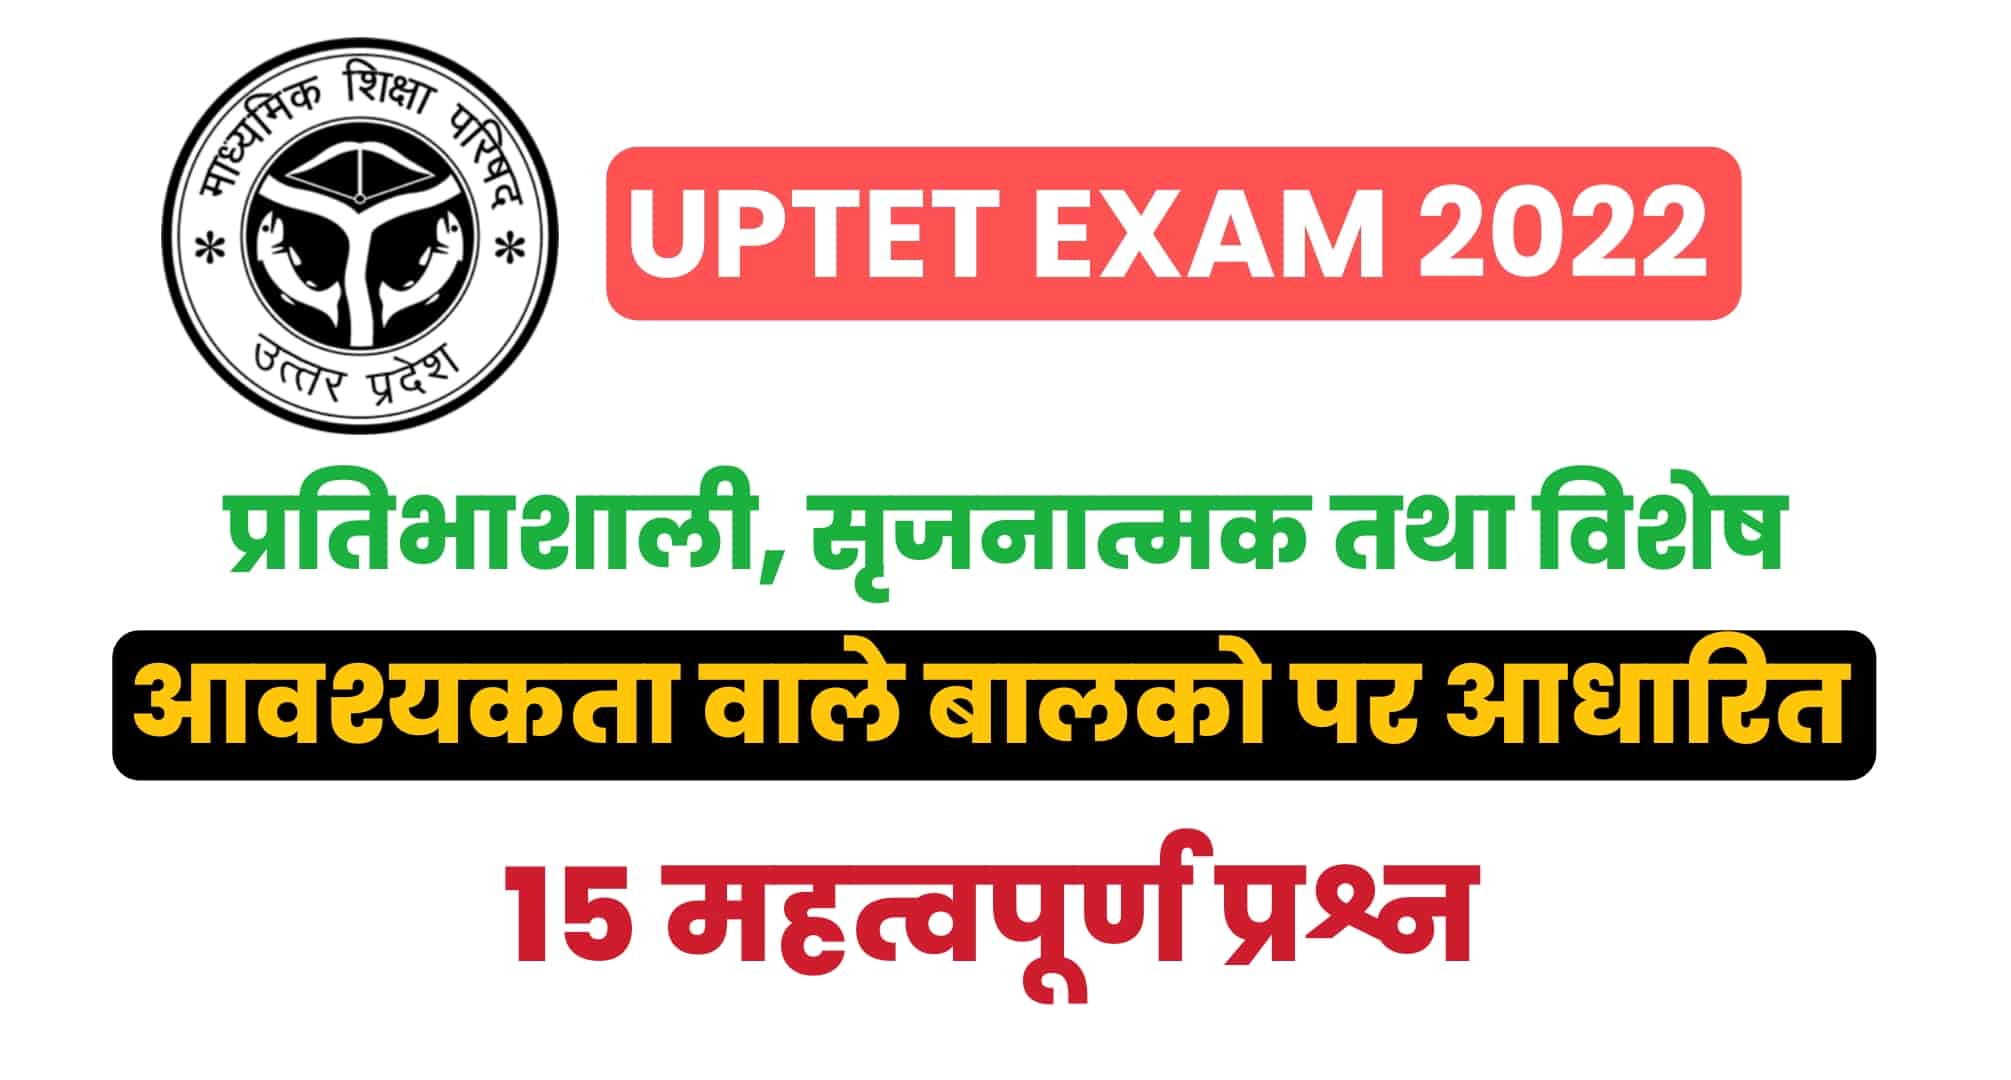 UPTET Exam 2022 : (बाल विकास) प्रतिभाशाली, सृजनात्मक तथा विशेष आवश्यकता वाले बालकों पर आधारित 15 महत्वपूर्ण प्रश्न